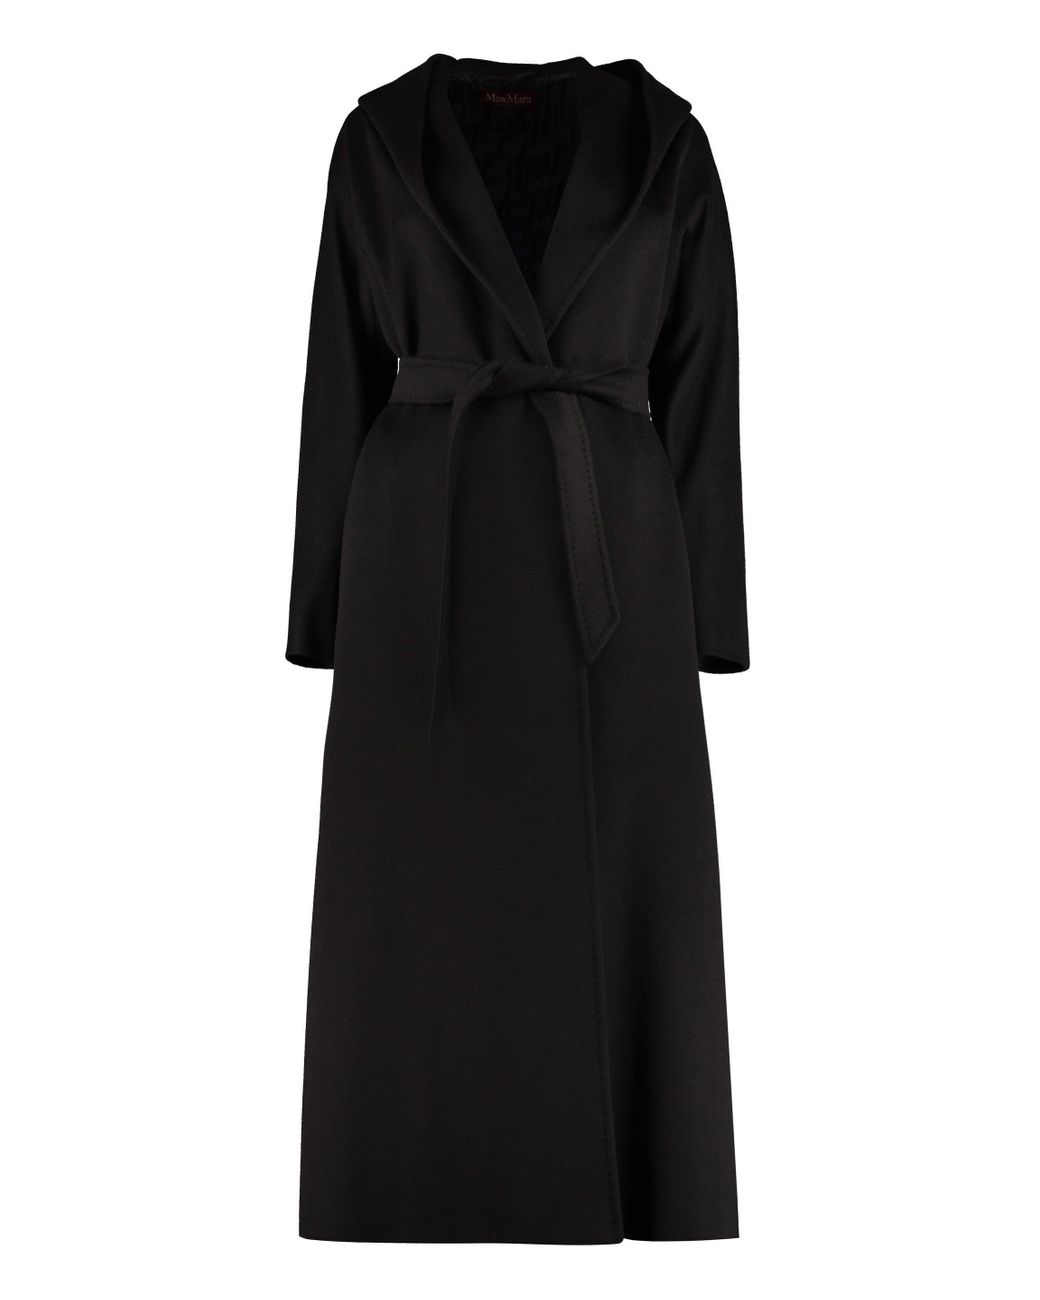 Max Mara Studio Danton Virgin Wool Coat in Black | Lyst